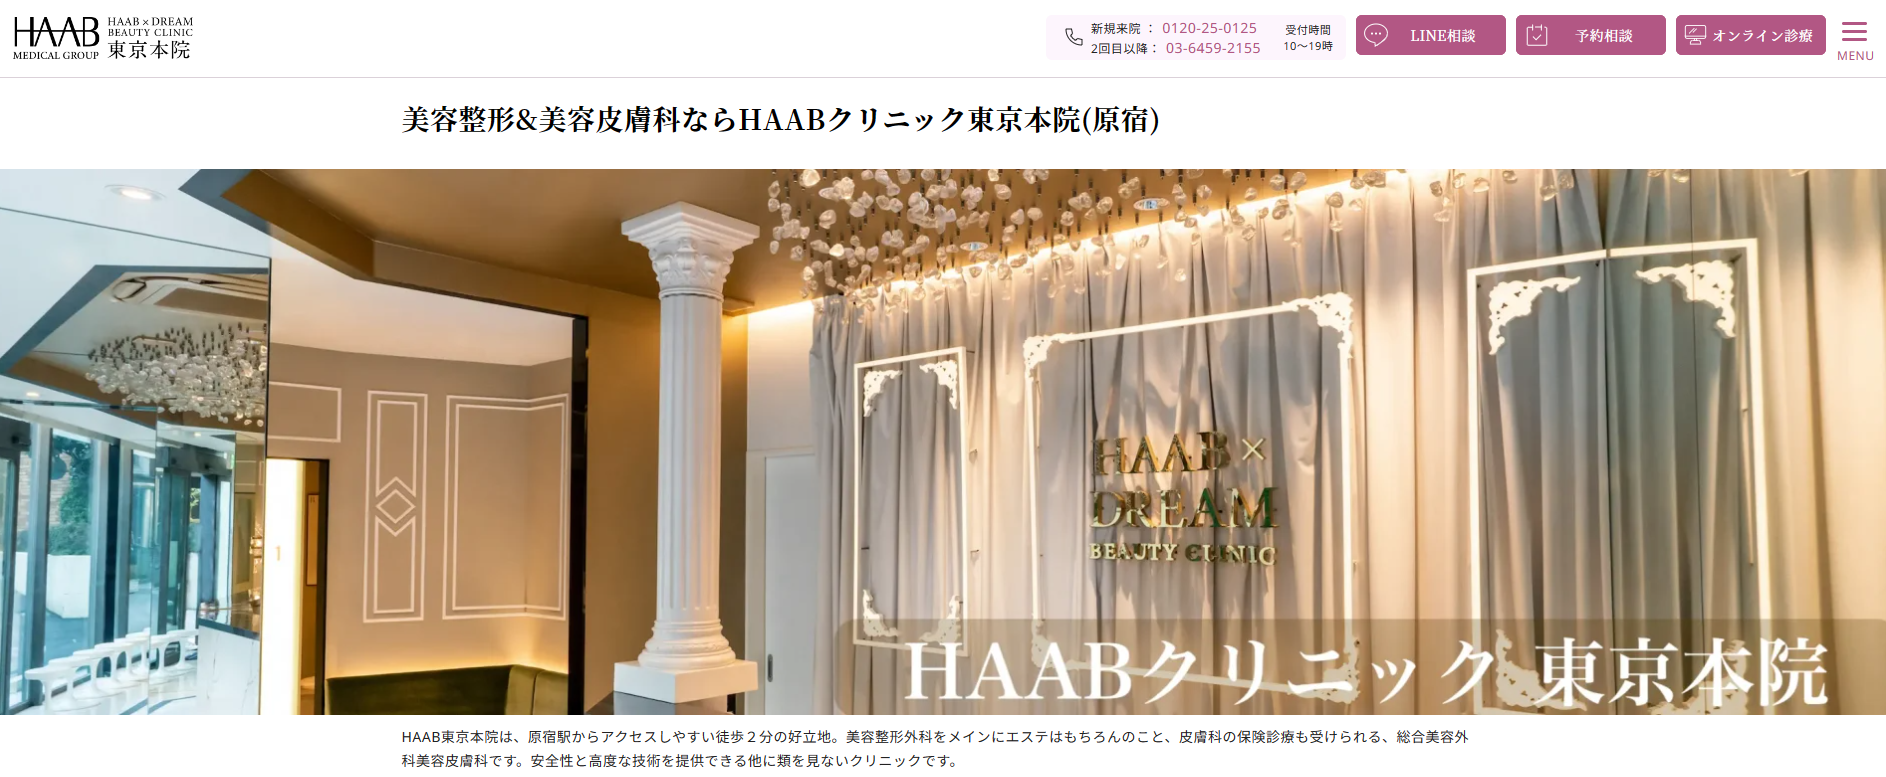 東京都で評判のクマ取りにおすすめのクリニック10選 HAAB × DREAM BEAUTY CLINIC 東京本院